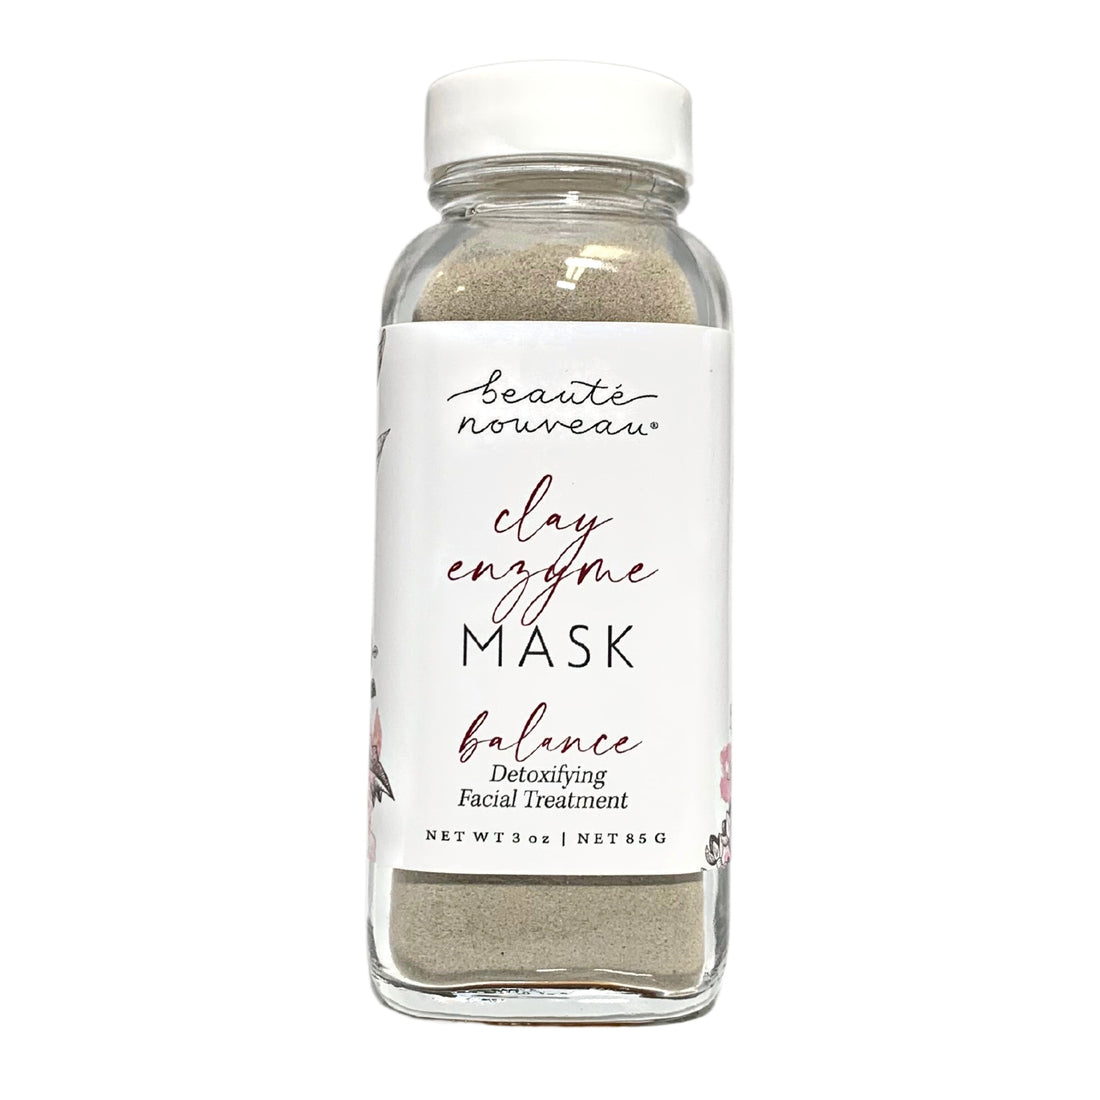 clay enzyme detoxifying mask